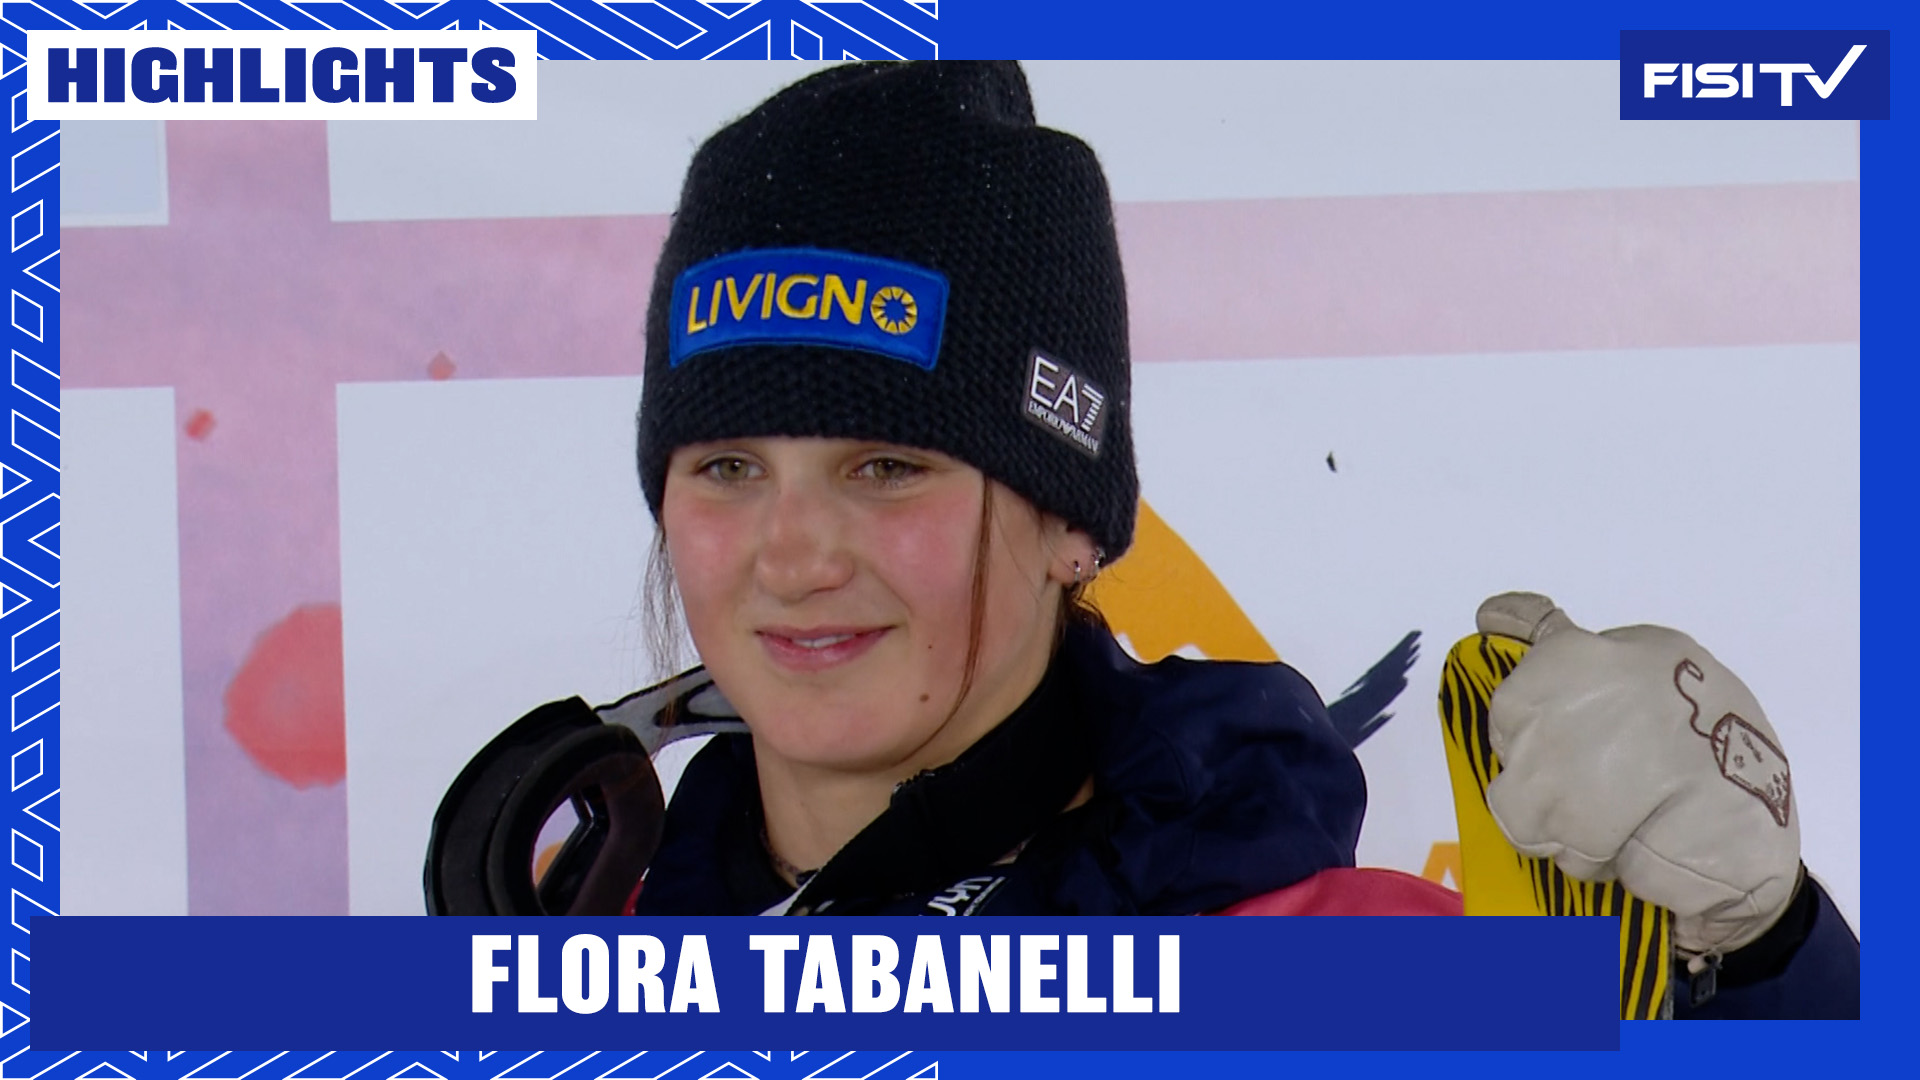 Flora Tabanelli torna sul podio in Coppa del Mondo a Tignes | FISI TV